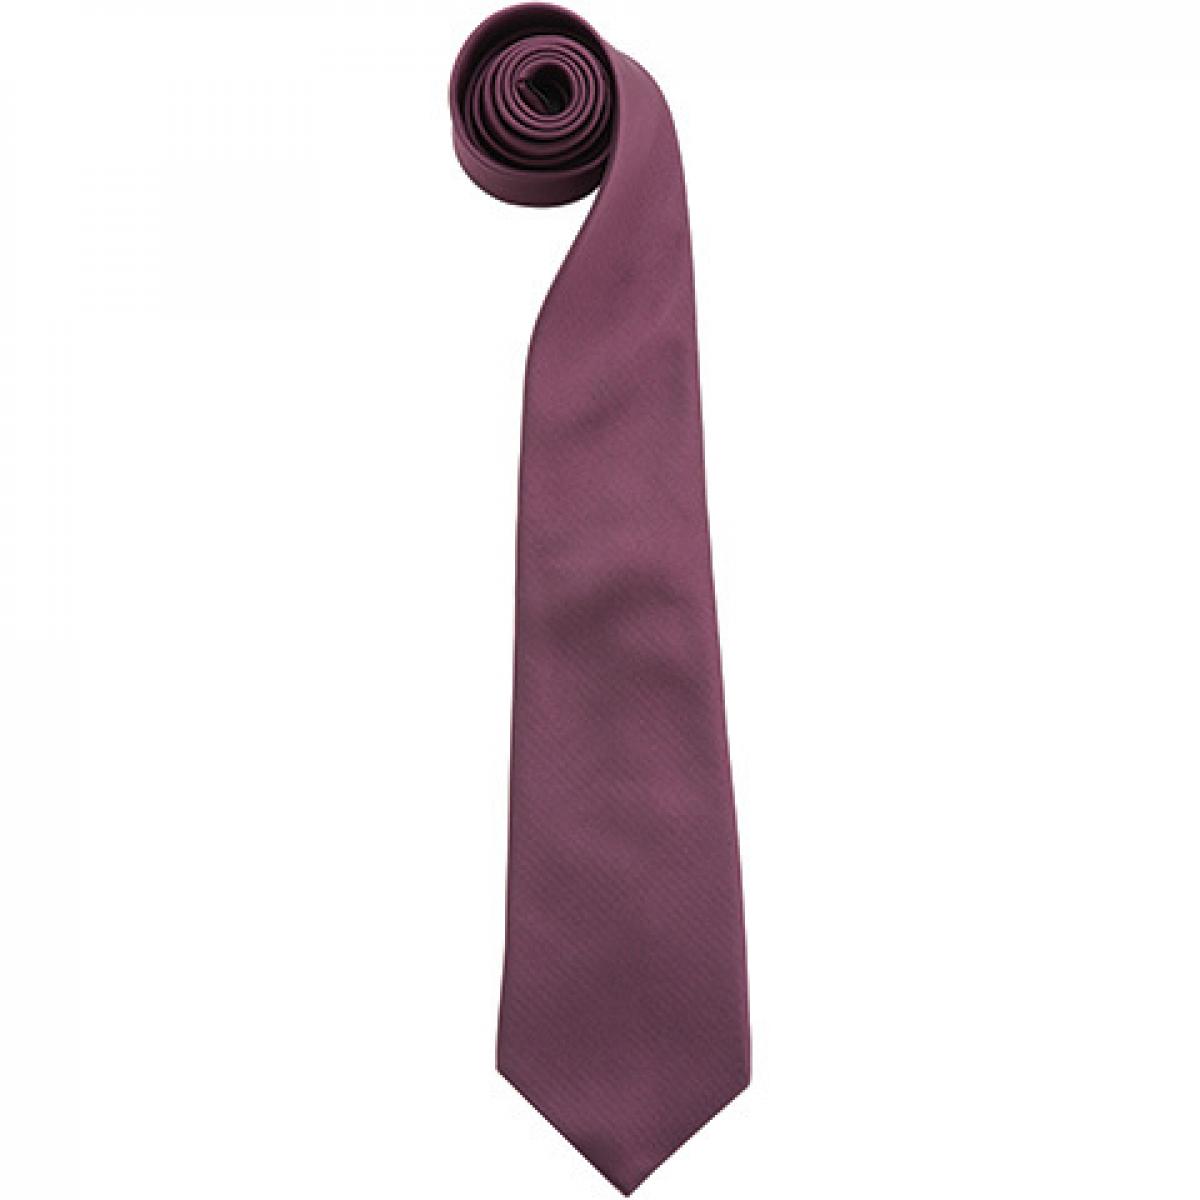 Hersteller: Premier Workwear Herstellernummer: PR765 Artikelbezeichnung: Krawatte Uni-Fashion / Colours Farbe: Purple (ca. Pantone 518C)